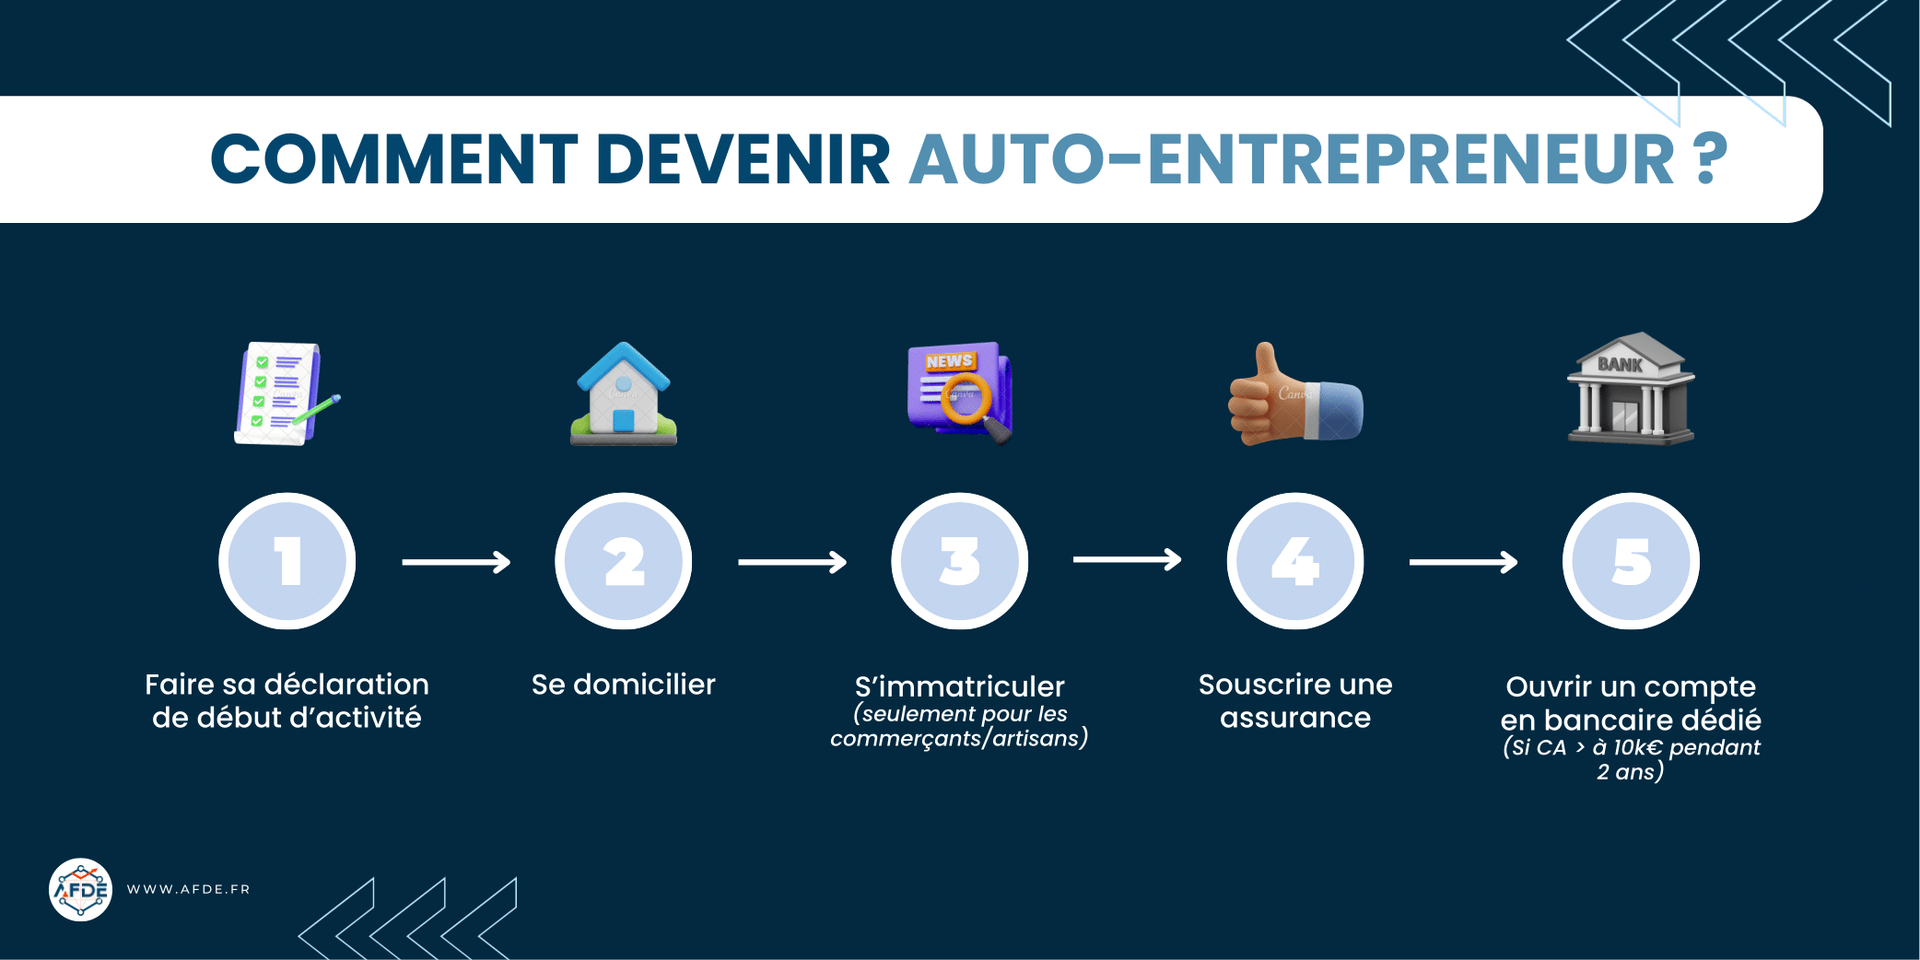 infographie représentant les 5 étapes pour devenir auto-entrepreneur.